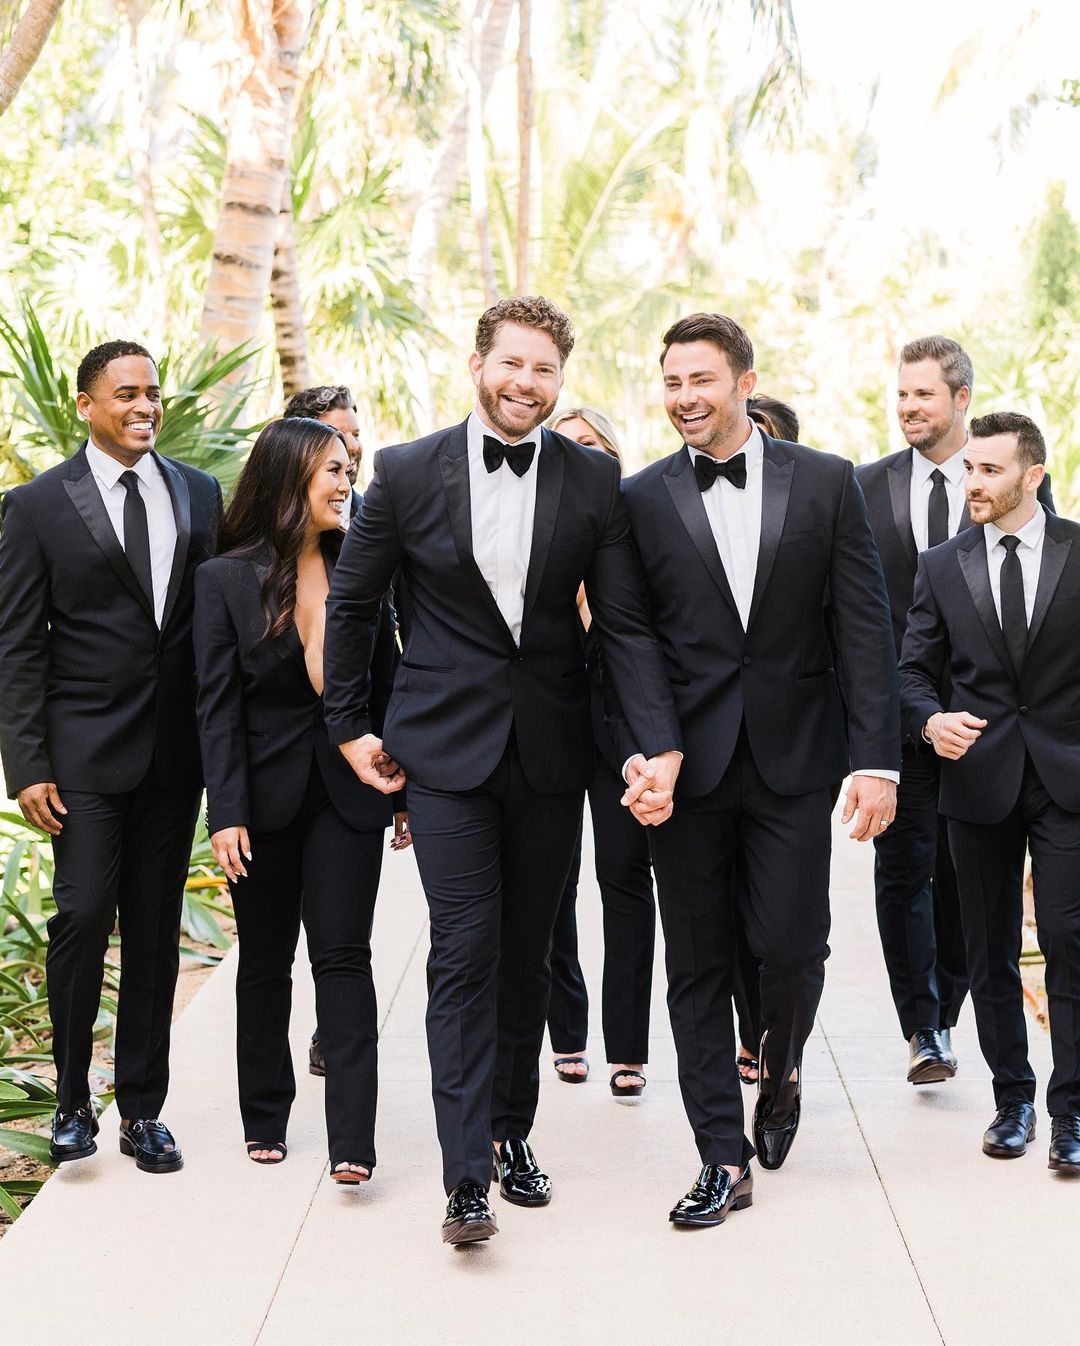 La boda de Jonathan Bennett en la Riviera Maya fue oficiada por su amigo, el youtuber Brian Tyler Cohen